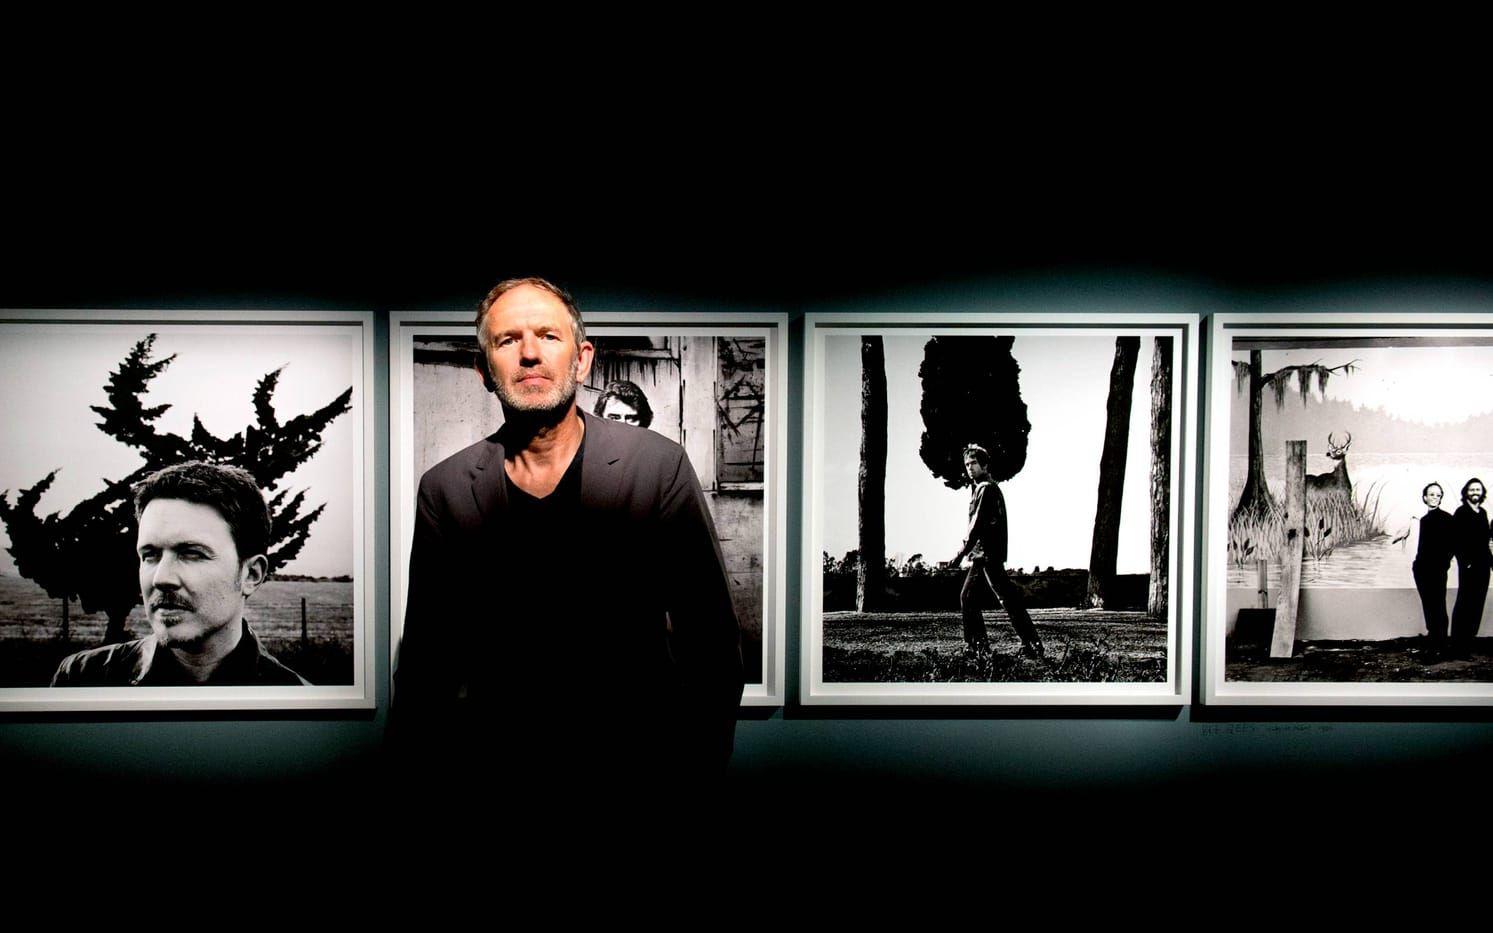 Fotografen Anton Corbijn på sin utställning på Fotografiska museet